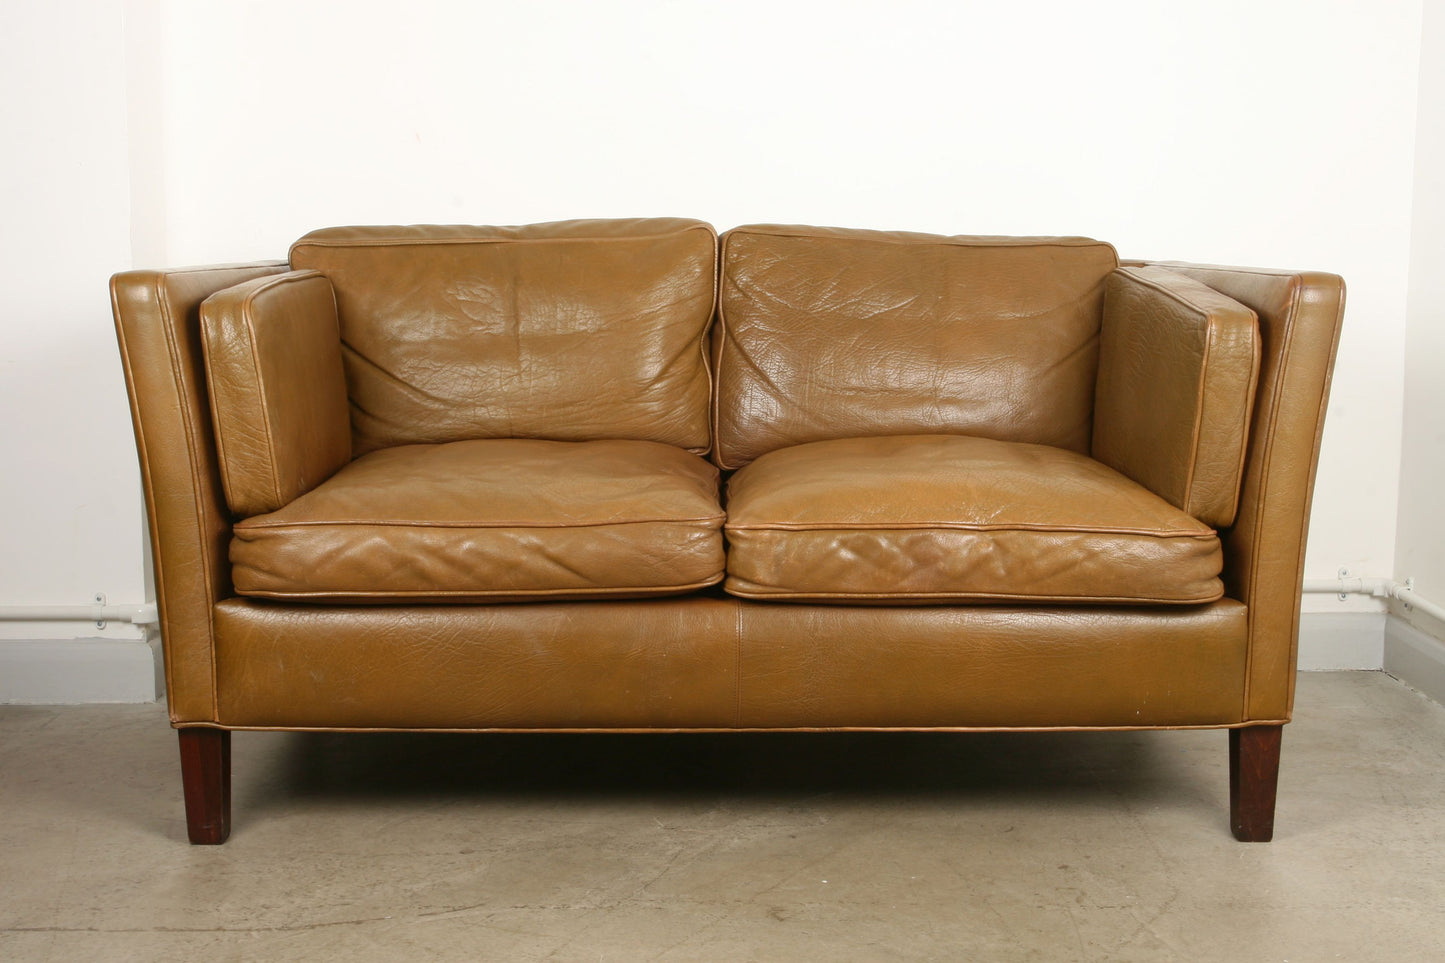 Two seat sofa in buffalo leather